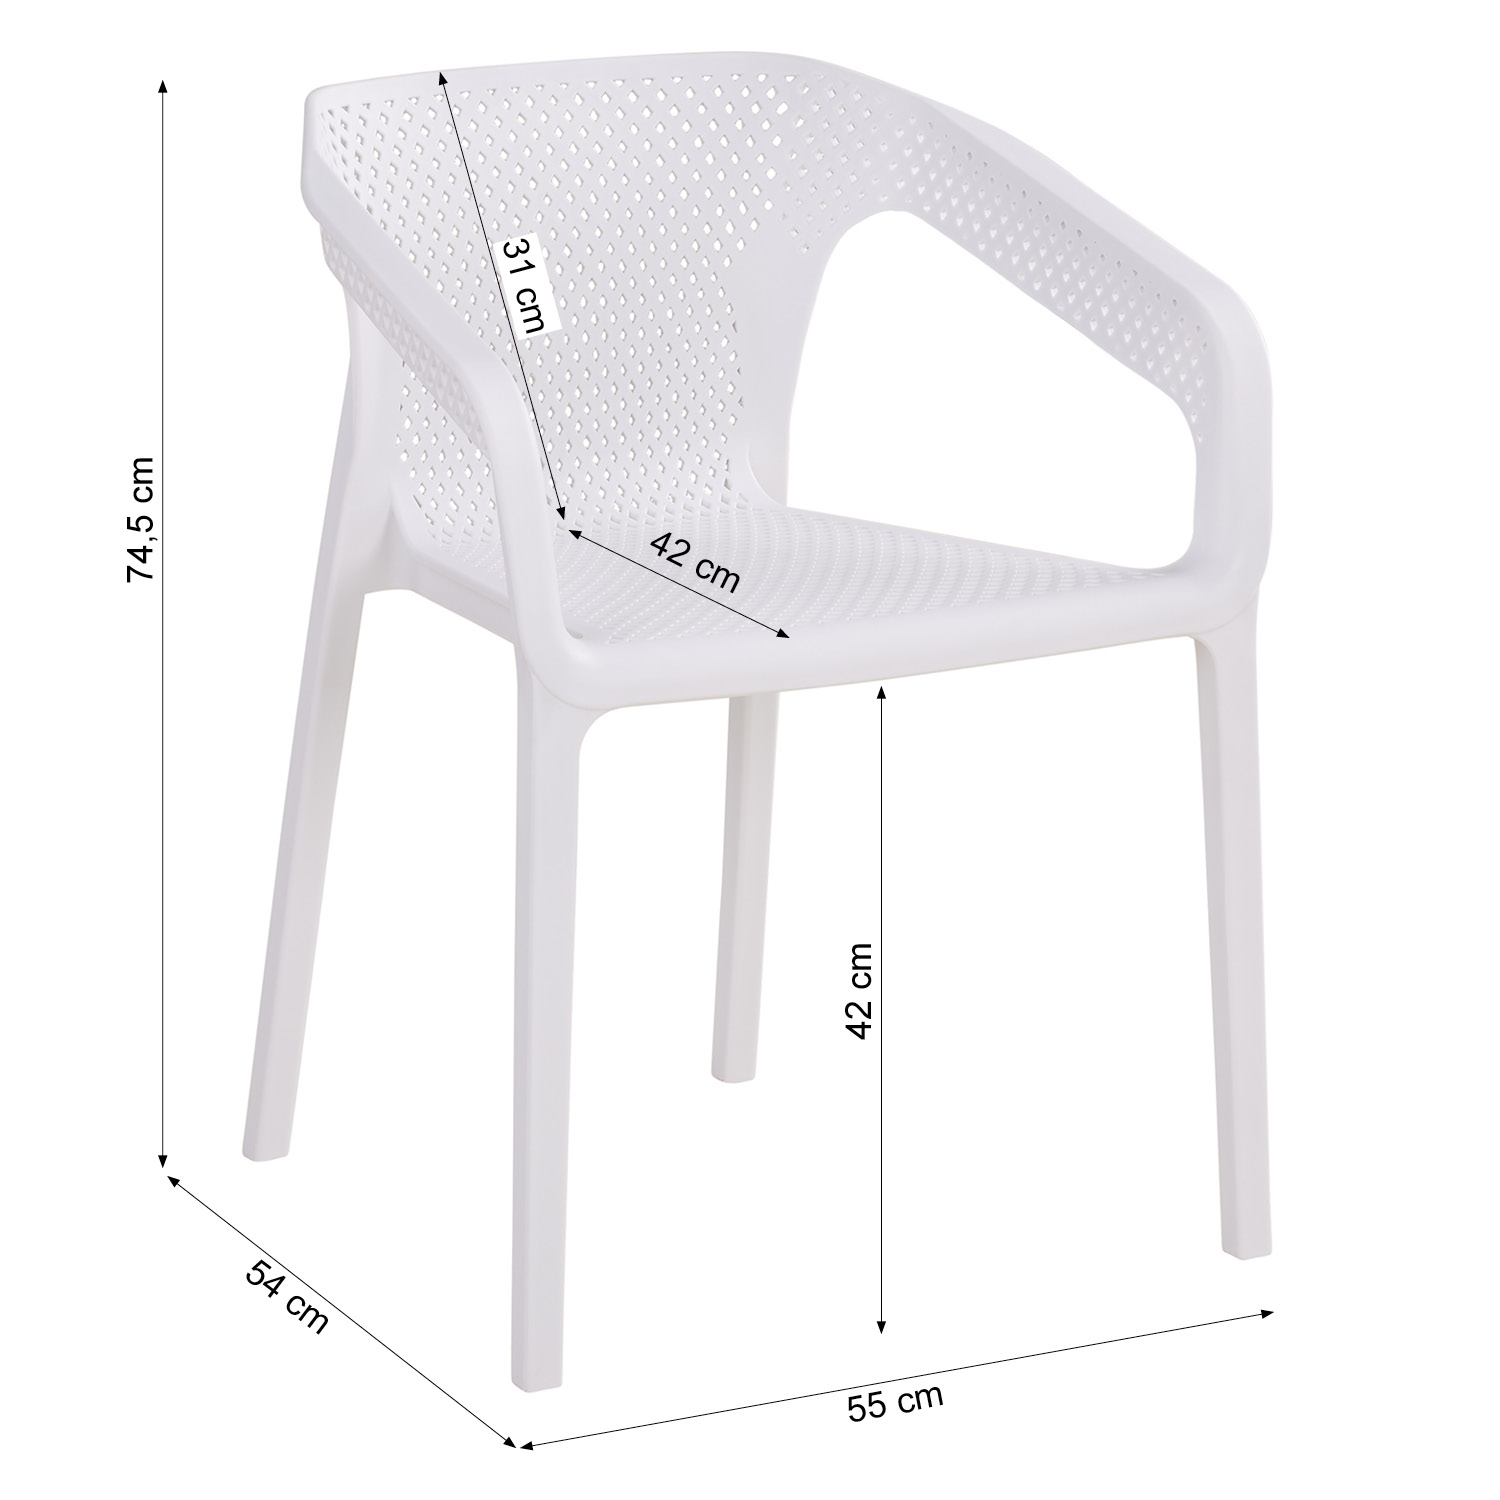 Gartenstuhl mit Armlehnen 4er Set Gartensessel Weiß Stühle Kunststoff Stapelstühle Balkonstuhl Outdoor-Stuhl